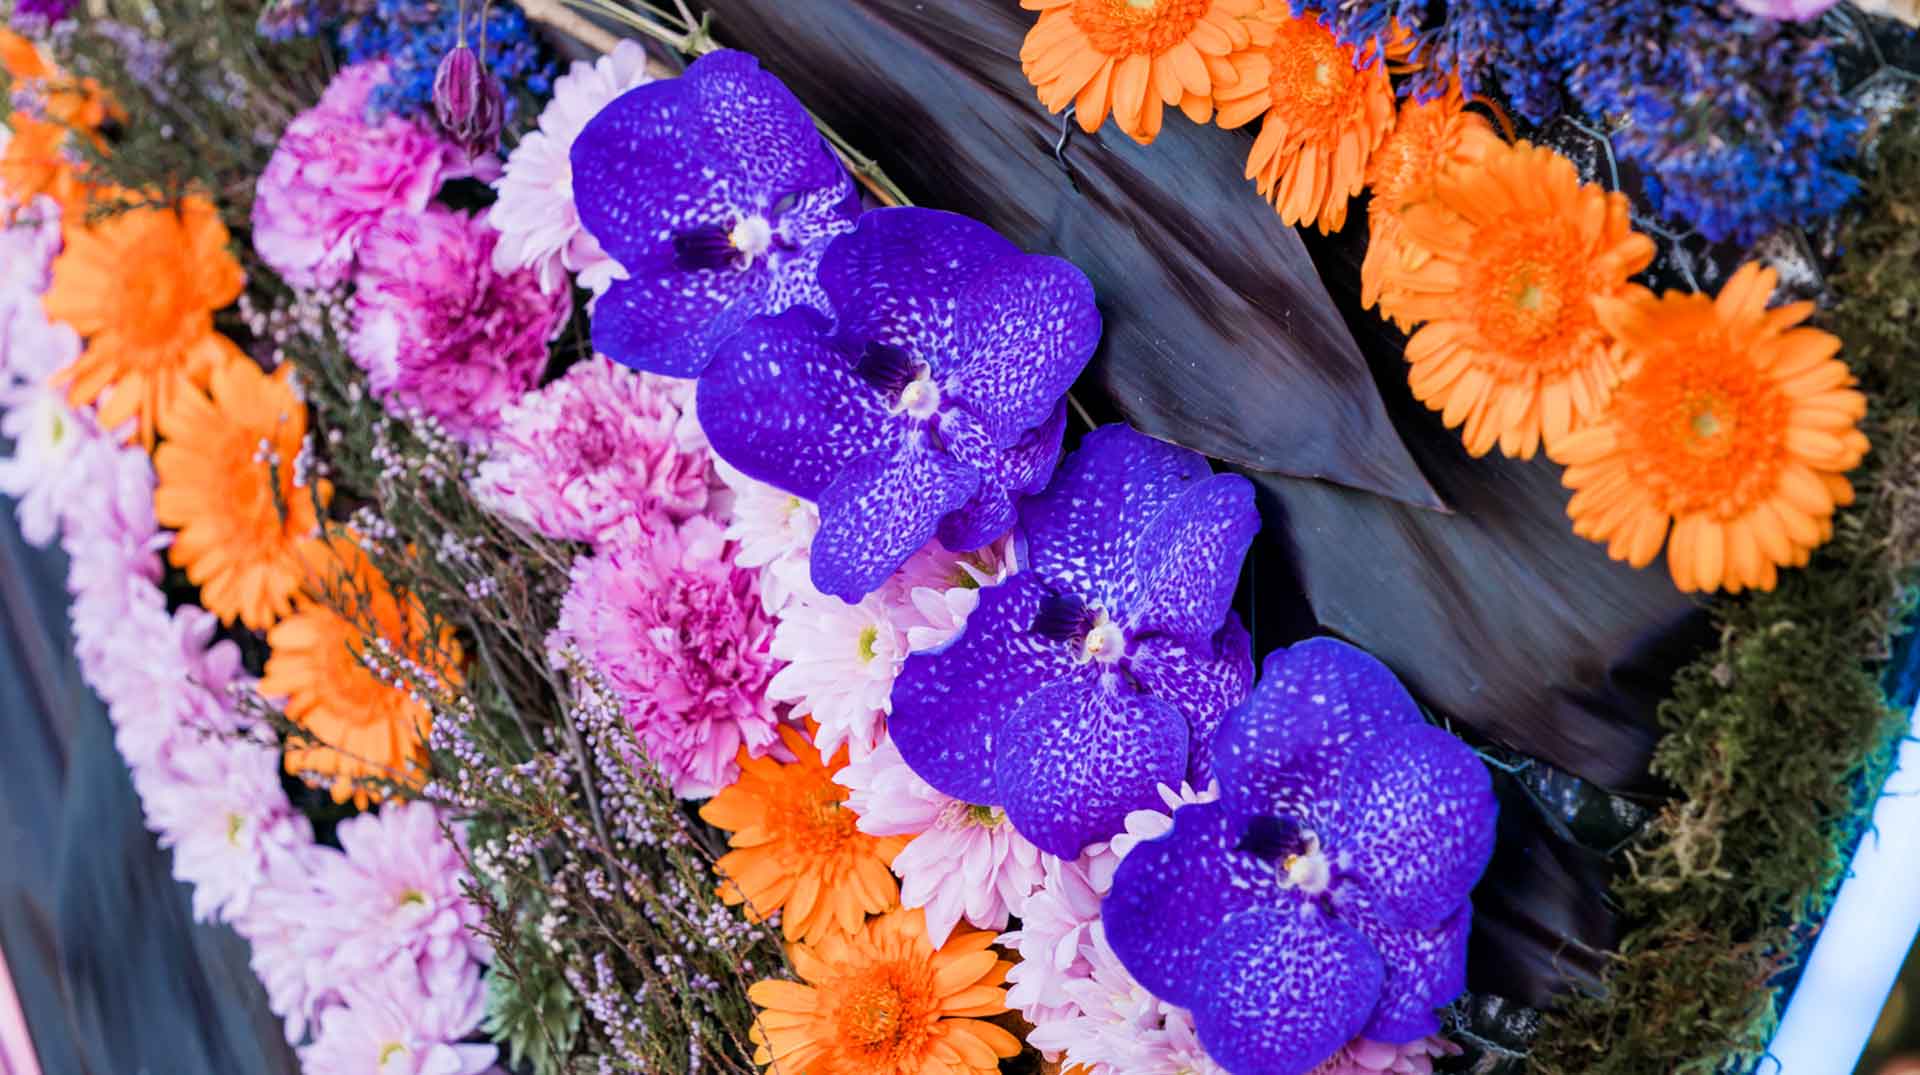 Folie Flore voyage au pays des jardins - couronne de fleurs orange et violette